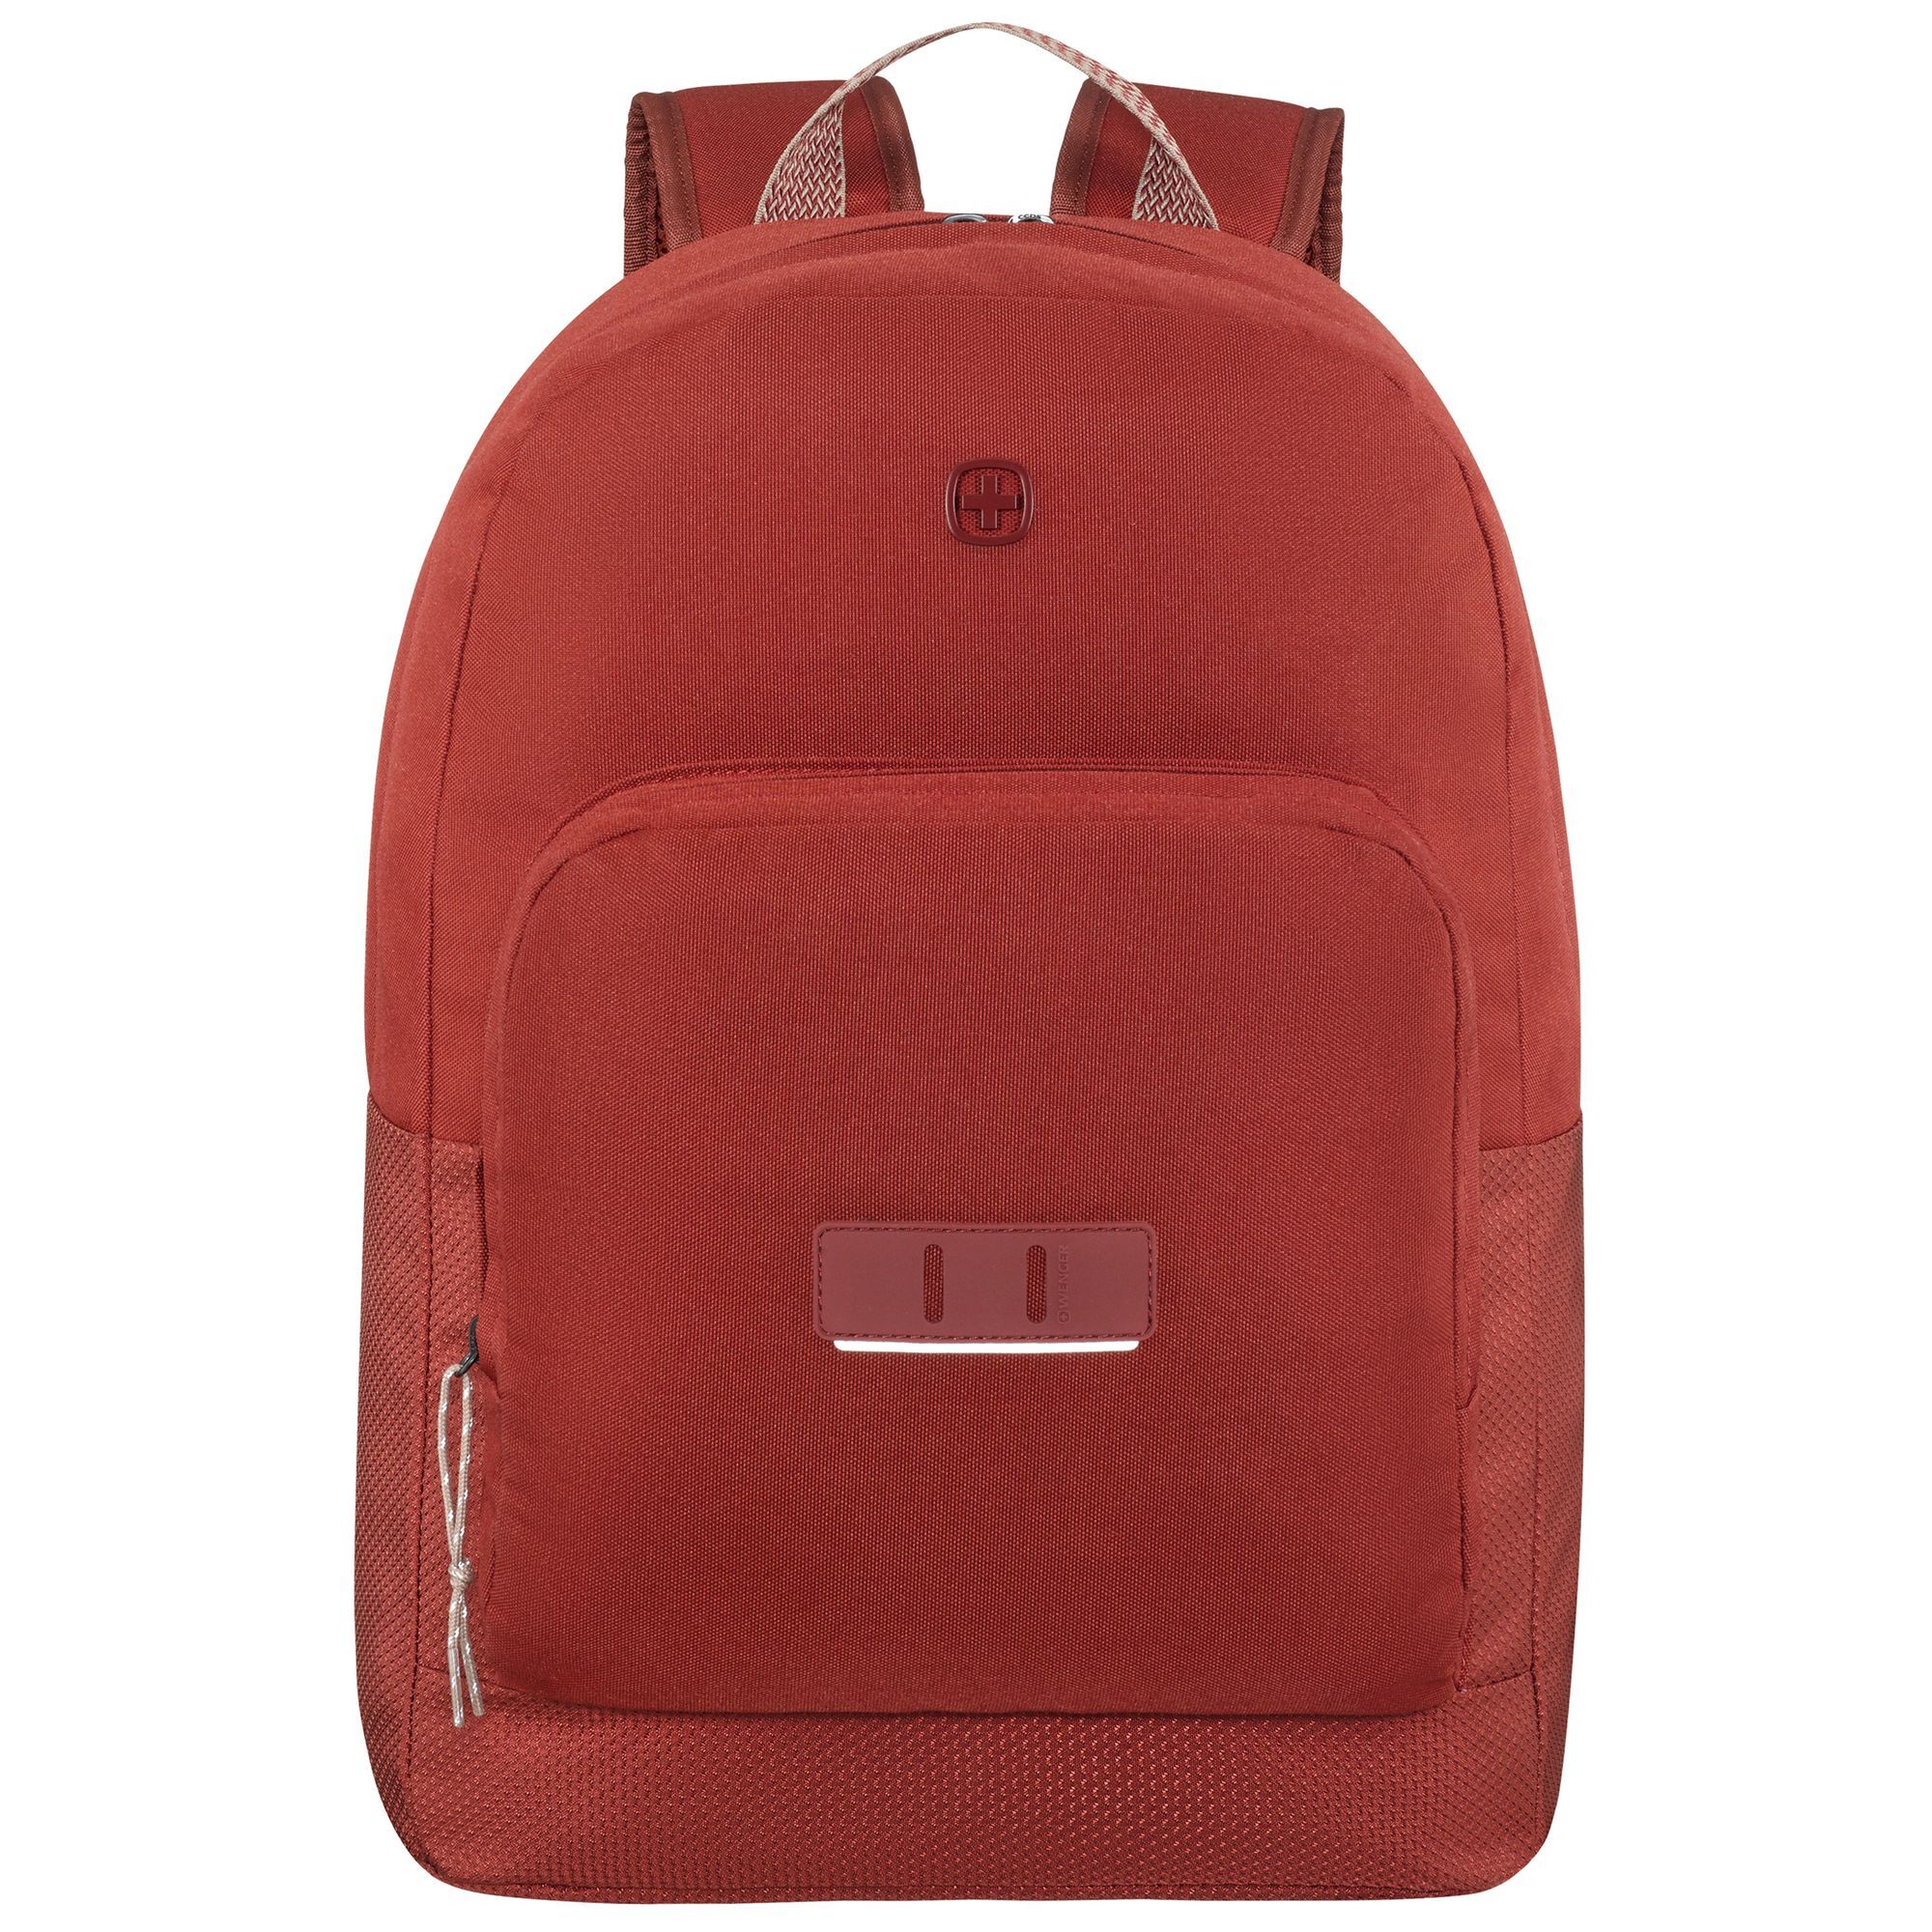 Рюкзак Wenger Crango 46 cm Laptopfach, цвет lava рюкзак wenger reload 14 42 cm laptopfach черный